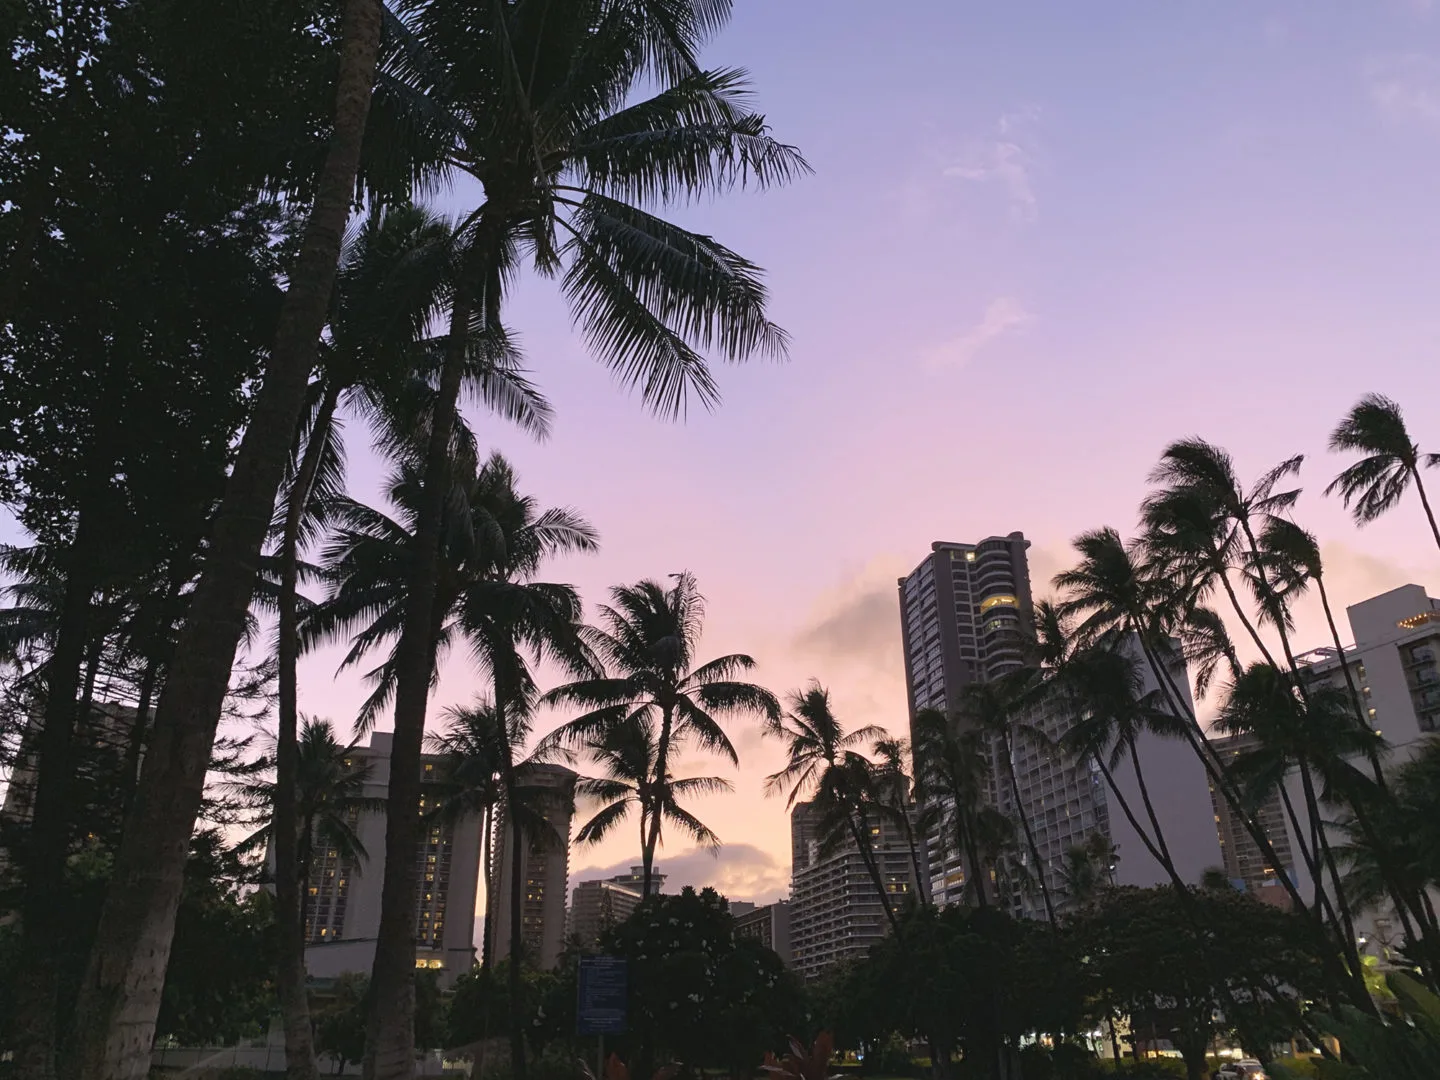 Sunset in Waikiki, Oahu, Hawaii